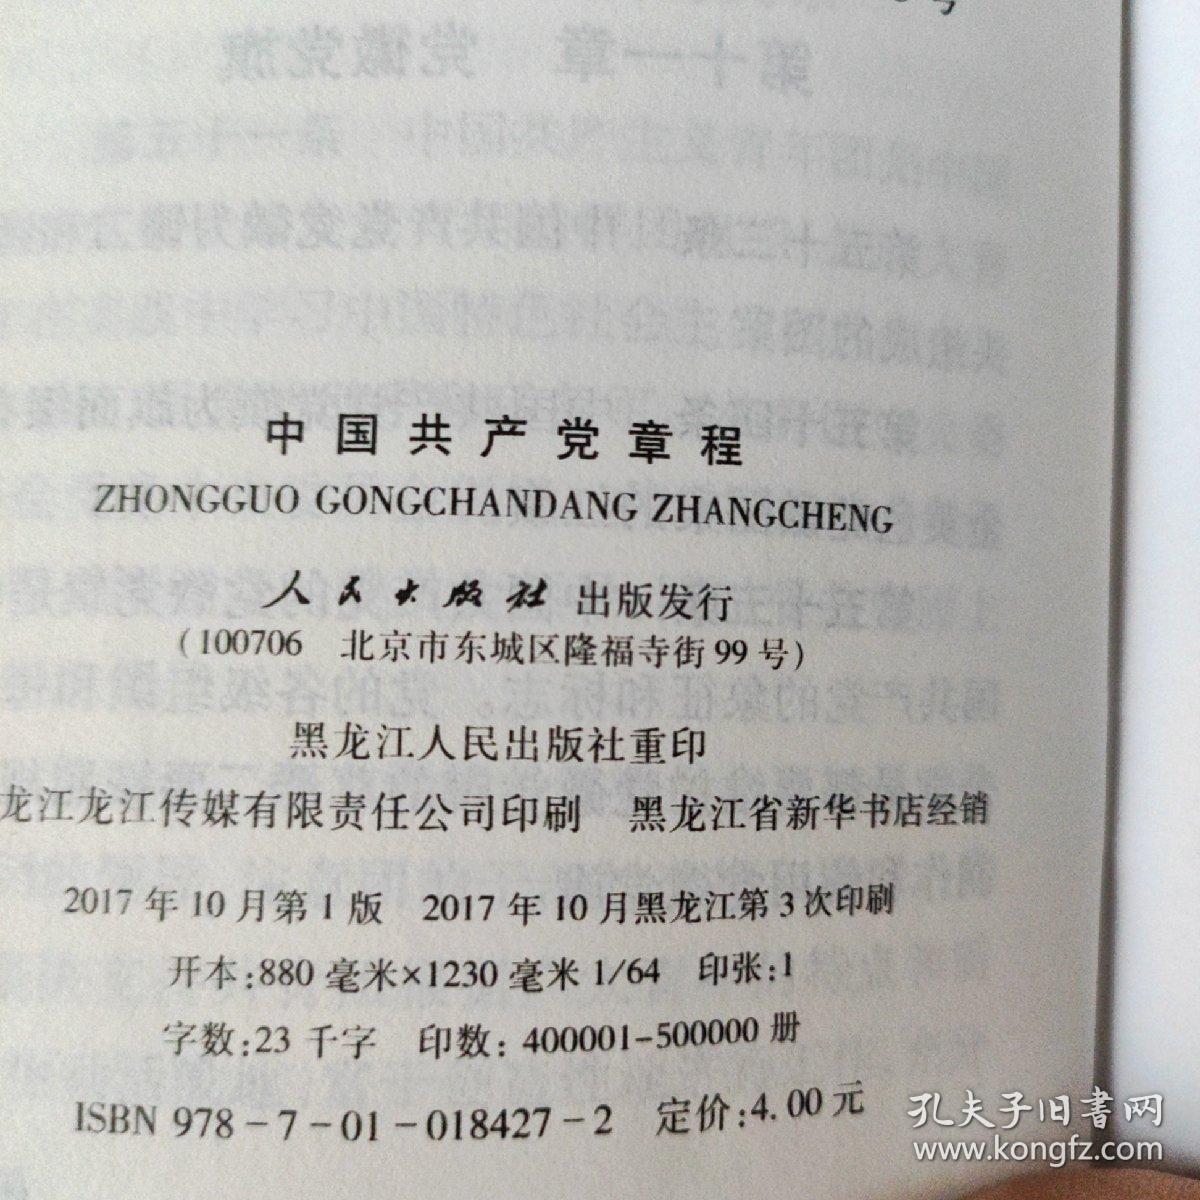 中国共产党章程。